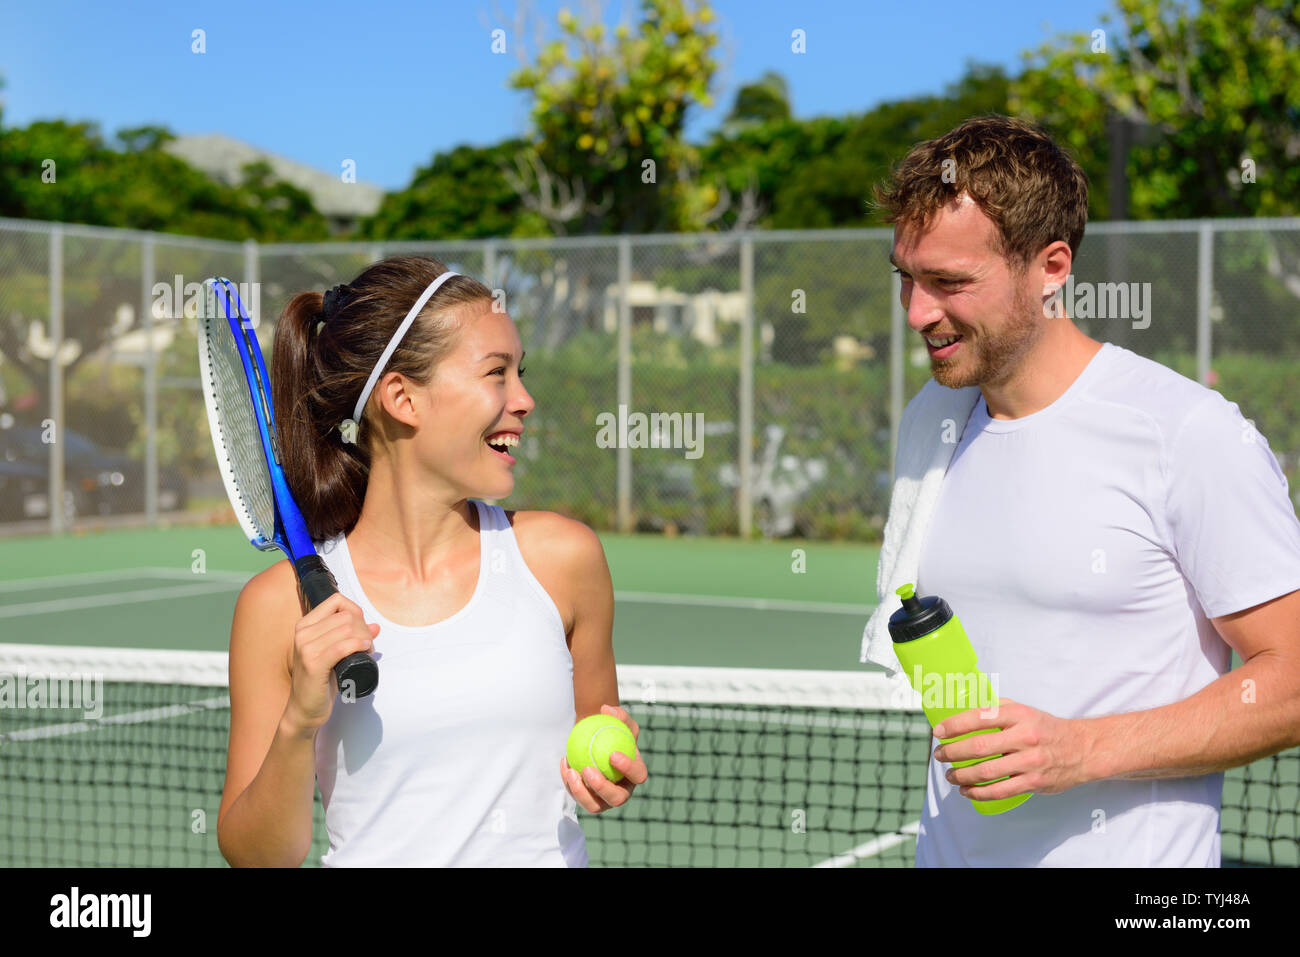 Sport Tennis - young après avoir joué au tennis à l'extérieur en été. Happy smiling friends sur tennis extérieur sain vivant de vie de forme physique active. La femme et l'homme les athlètes. Banque D'Images